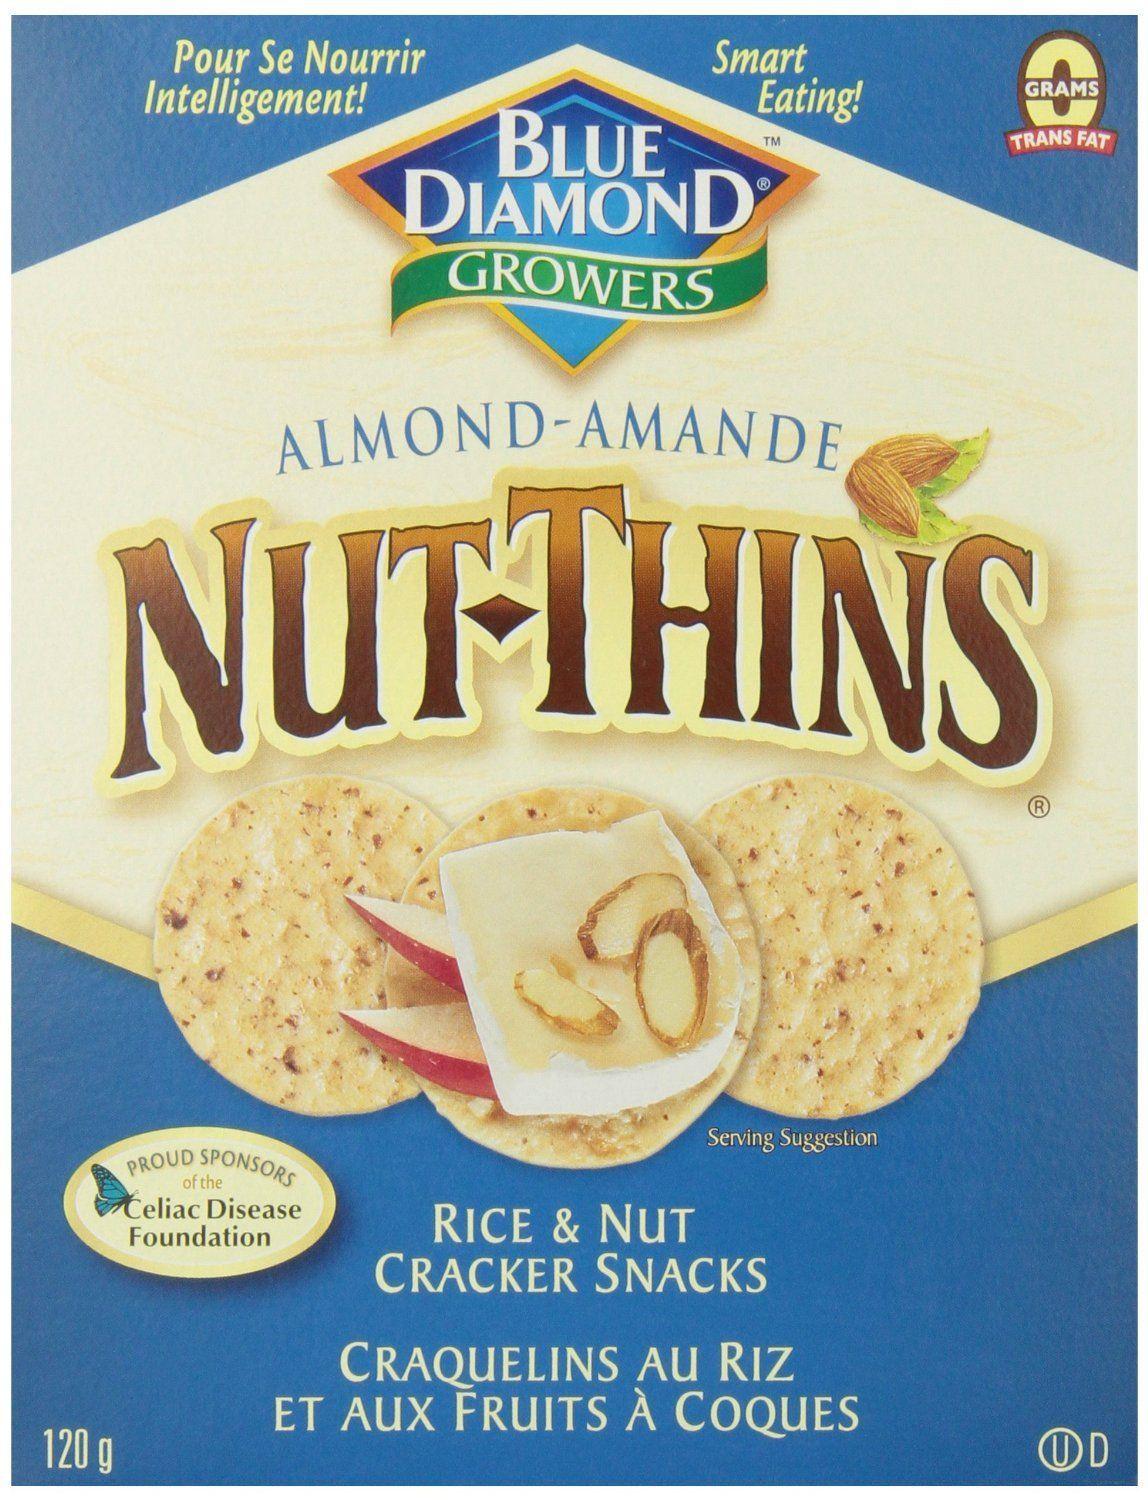 Blue Diamond Nut Thins Logo - Blue Diamond Nut Thins Salt Me!